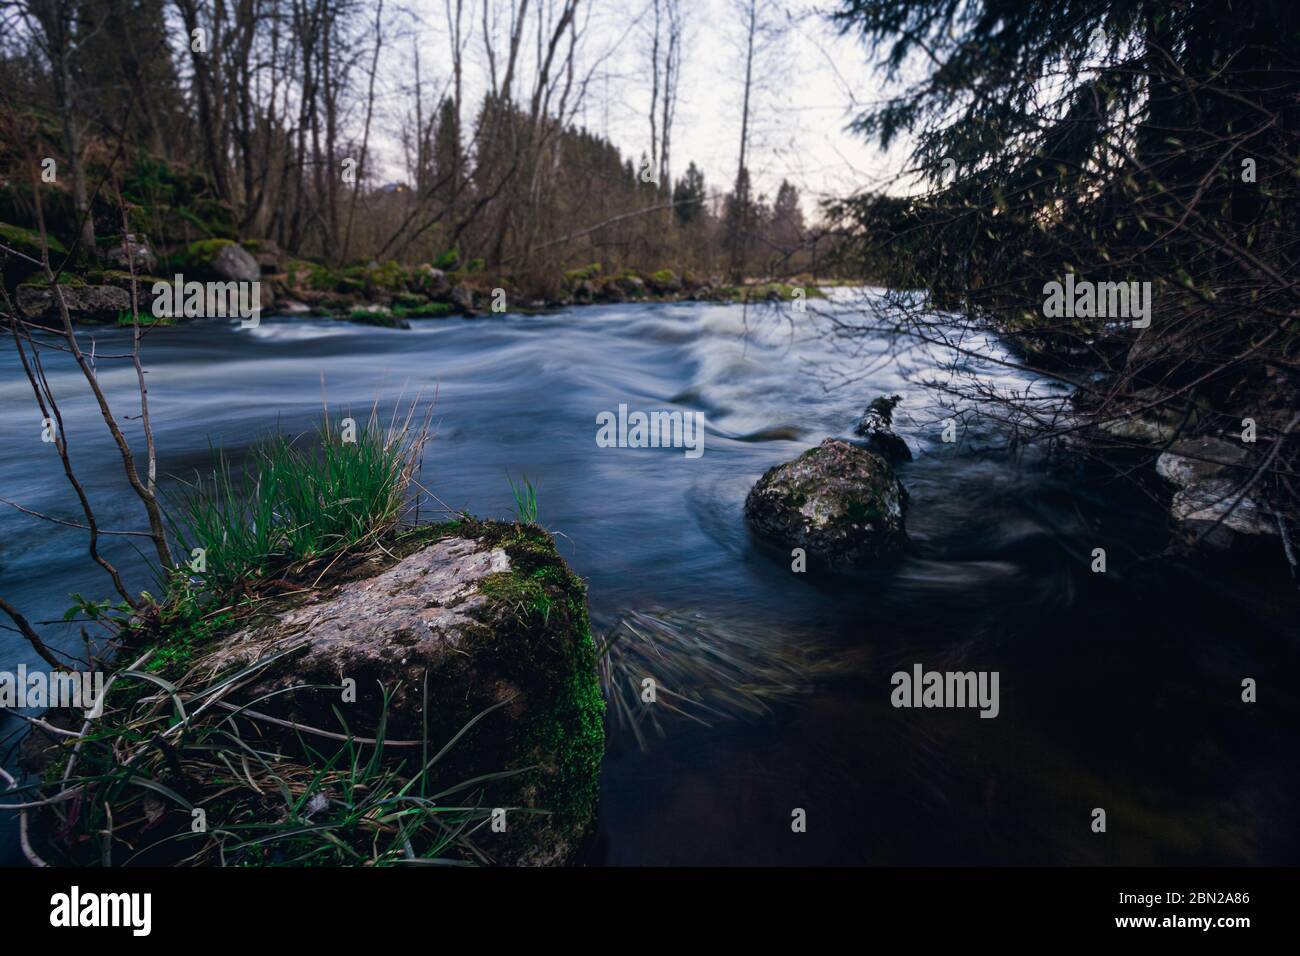 La pierre de rivière et les arbres. Rivière rapide au milieu de la forêt. Flux d'eau à exposition longue. Banque D'Images